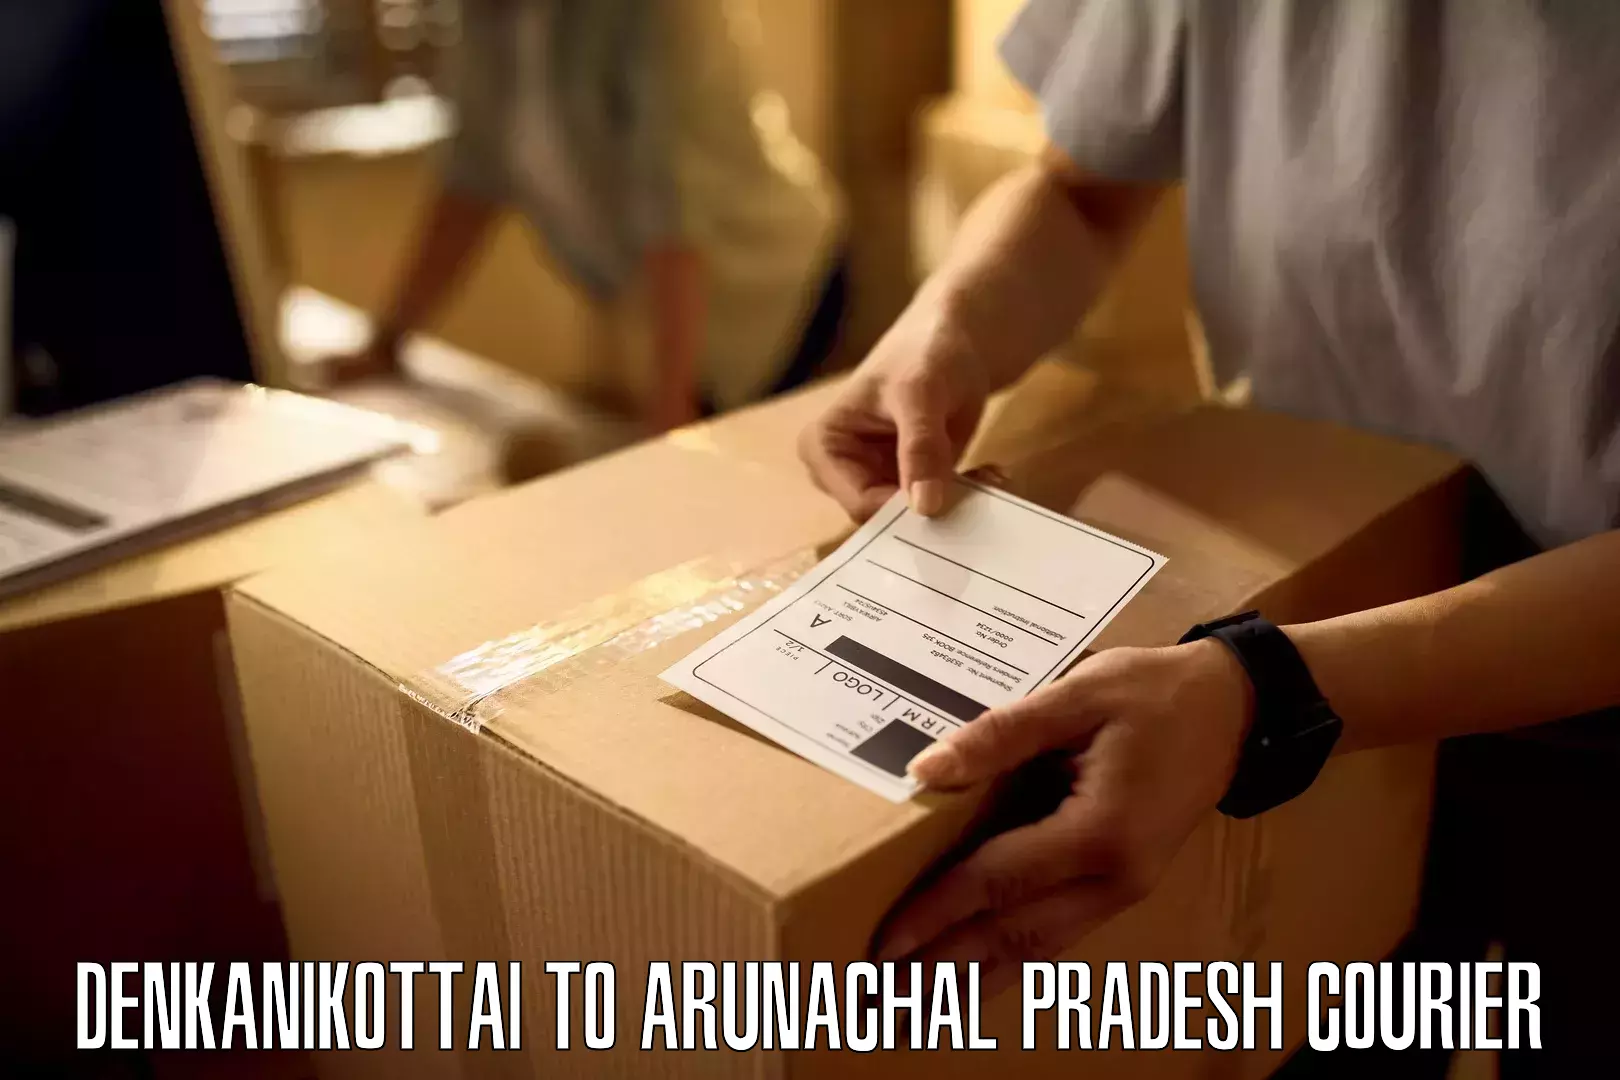 Efficient cargo services Denkanikottai to Arunachal Pradesh